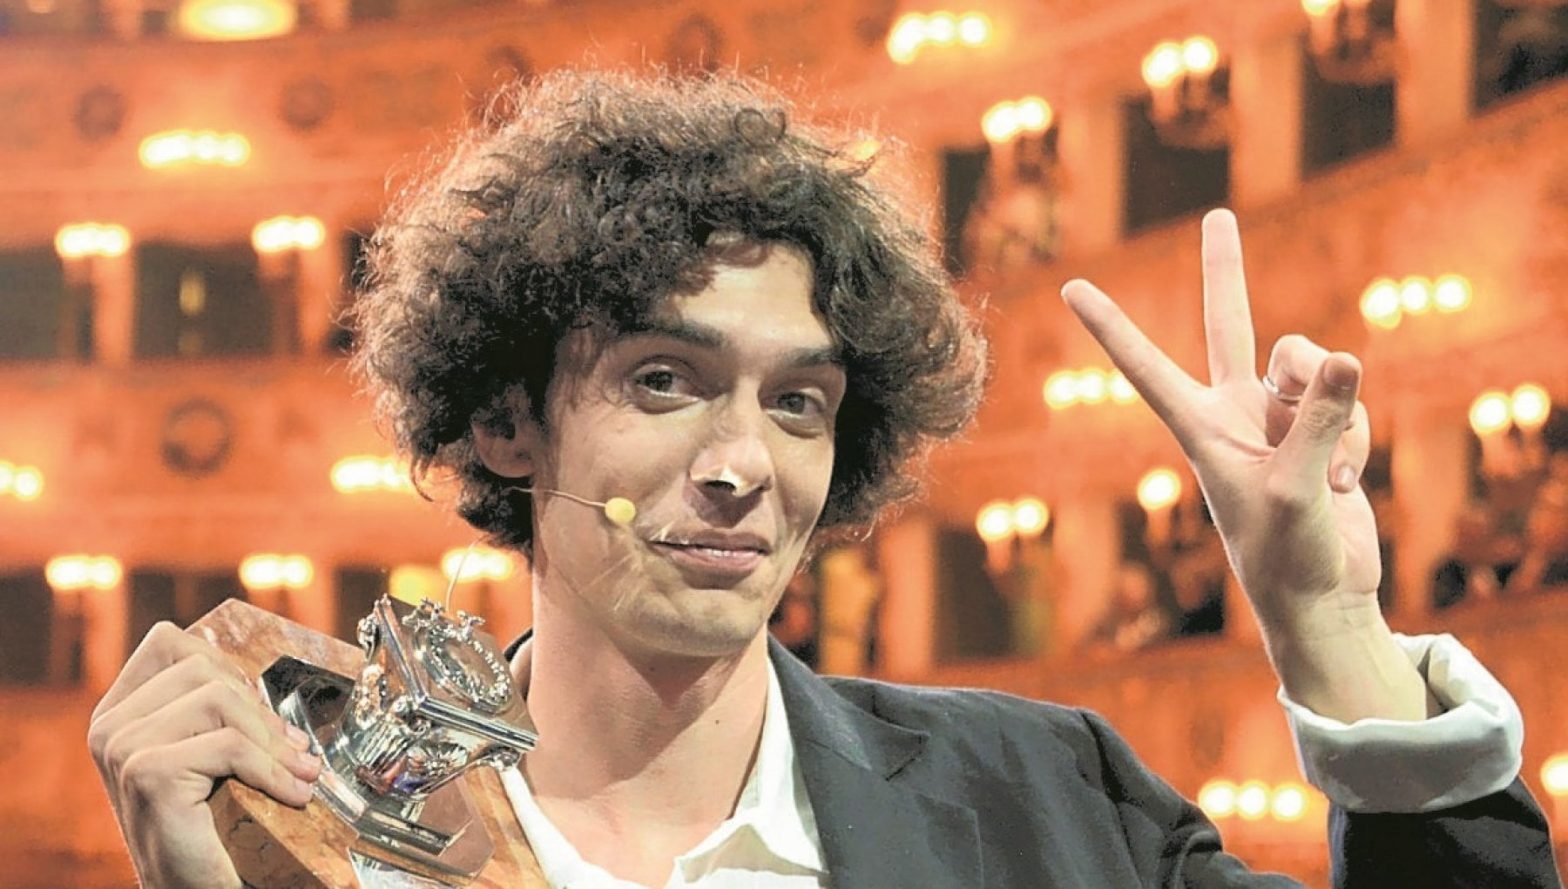 Premio Campiello 2022: vince l’esordiente Bernardo Zannoni con “I miei stupidi intenti”